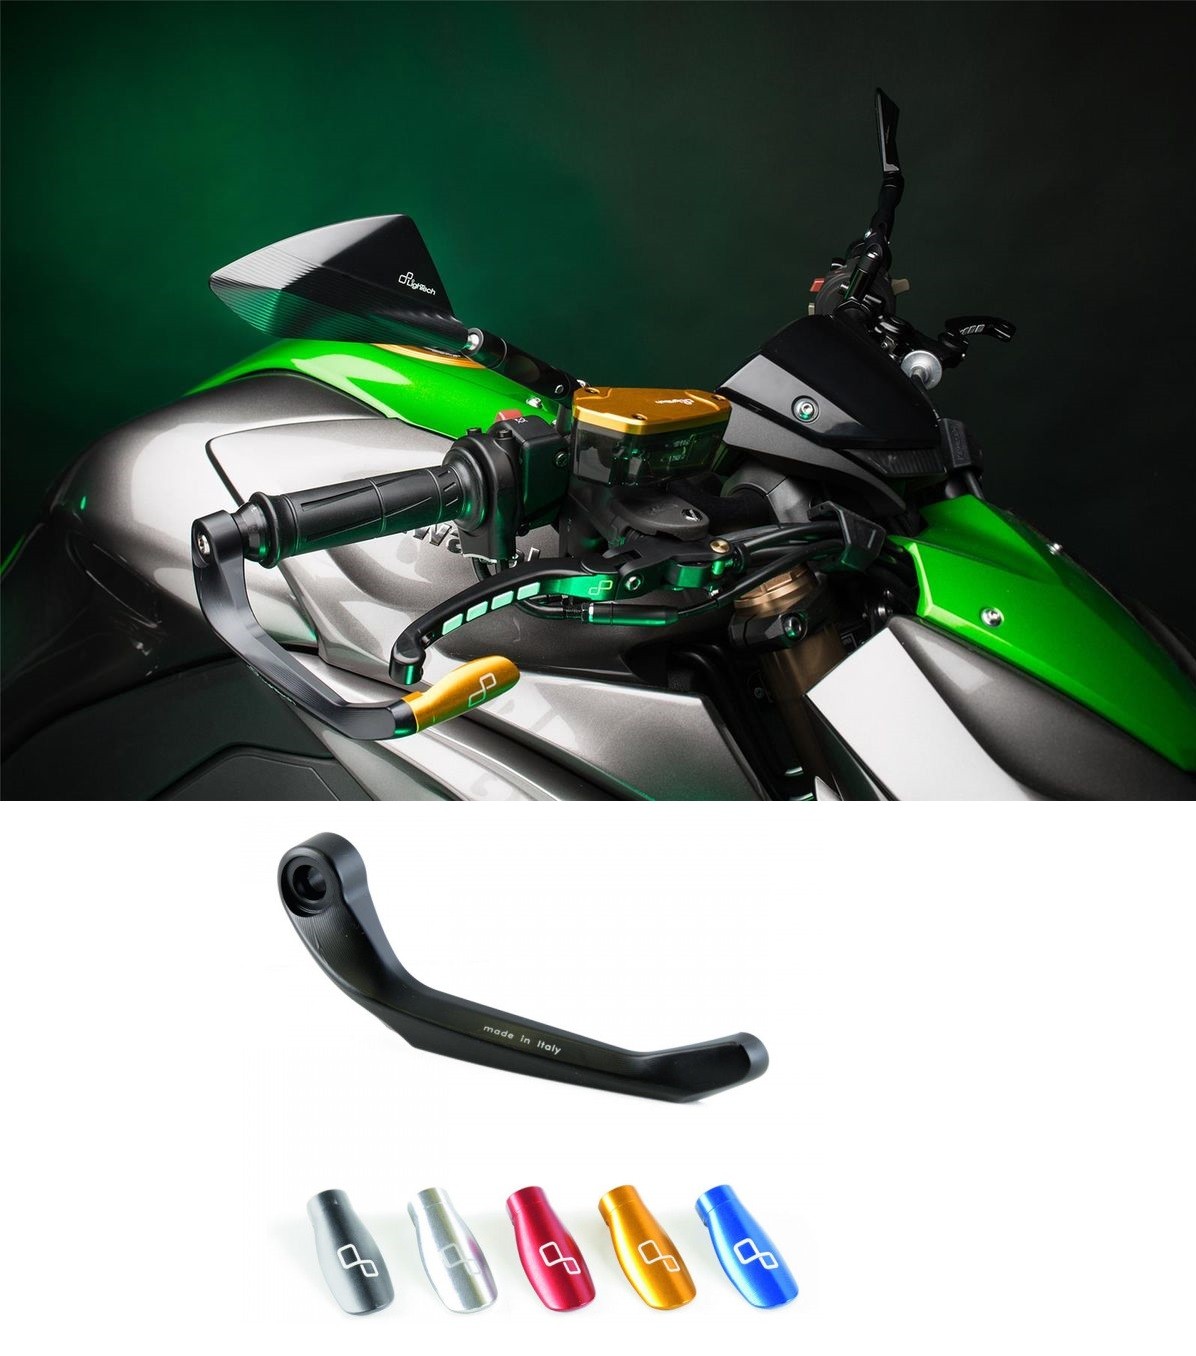 Protection de levier de frein moto en aluminium LIGHTECH pour votre moto  accessoires moto piste chez equip'moto